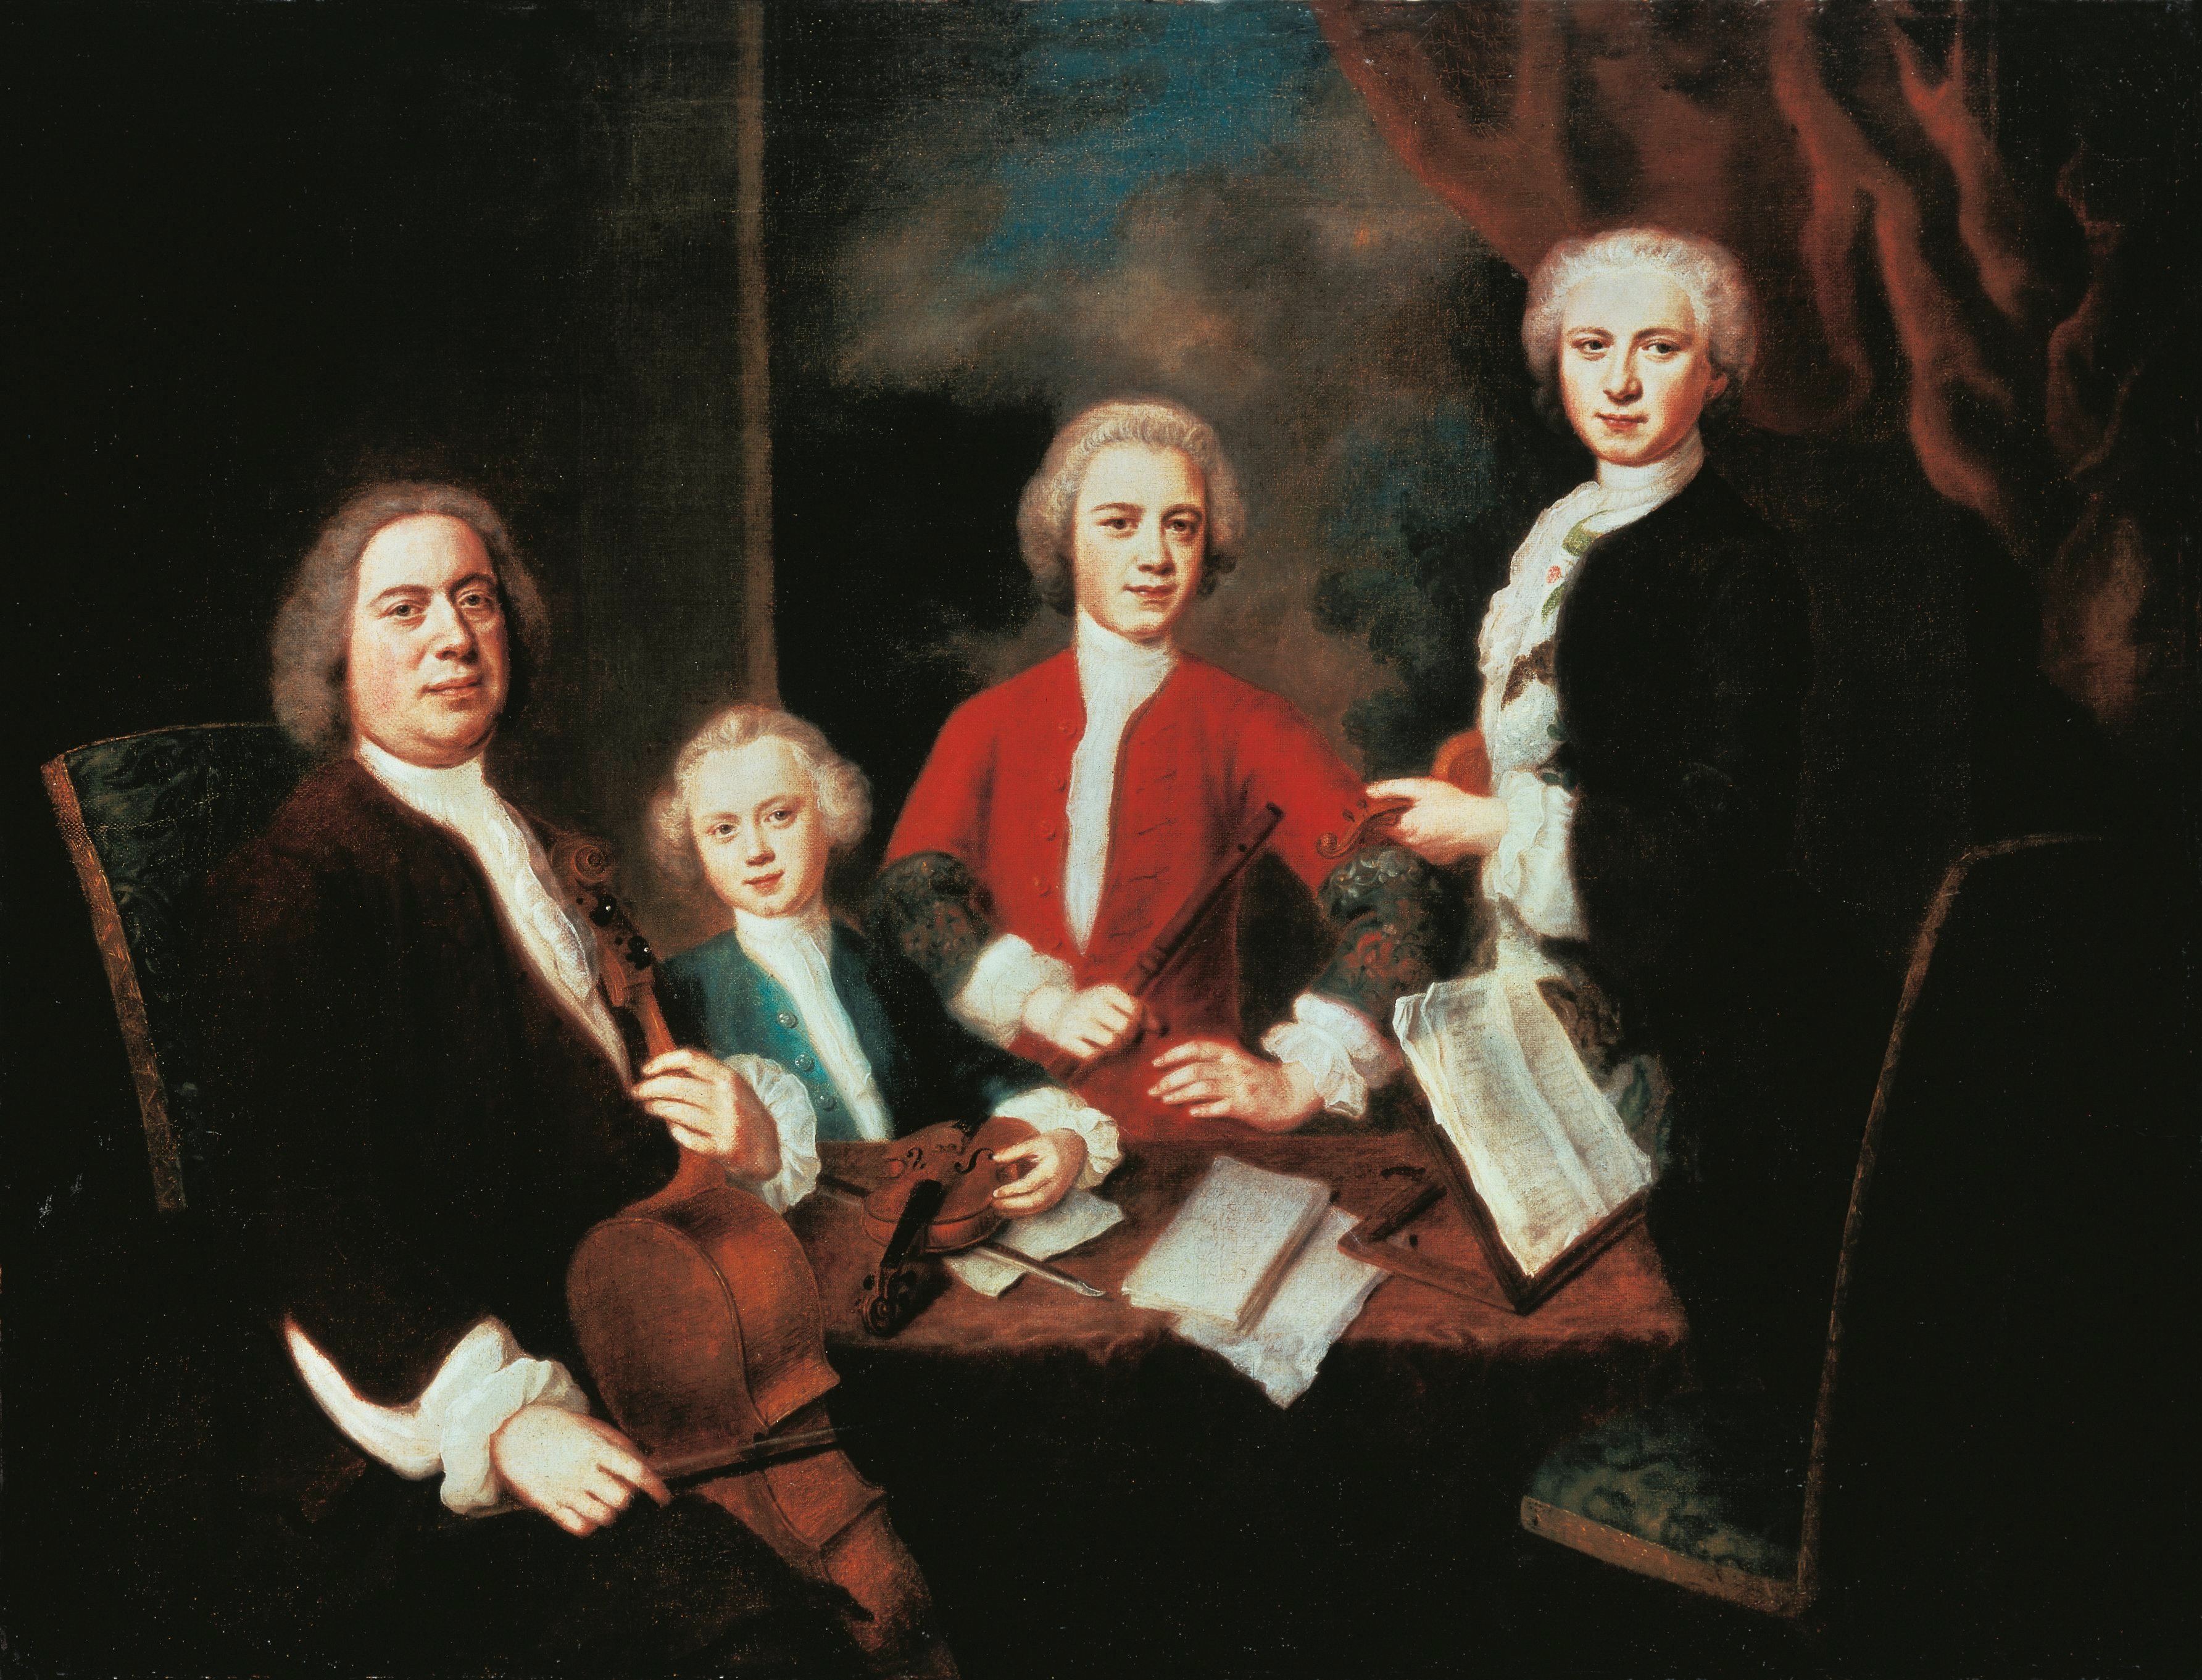 Germany, Johann Sebastian Bach with his Sons, 1730